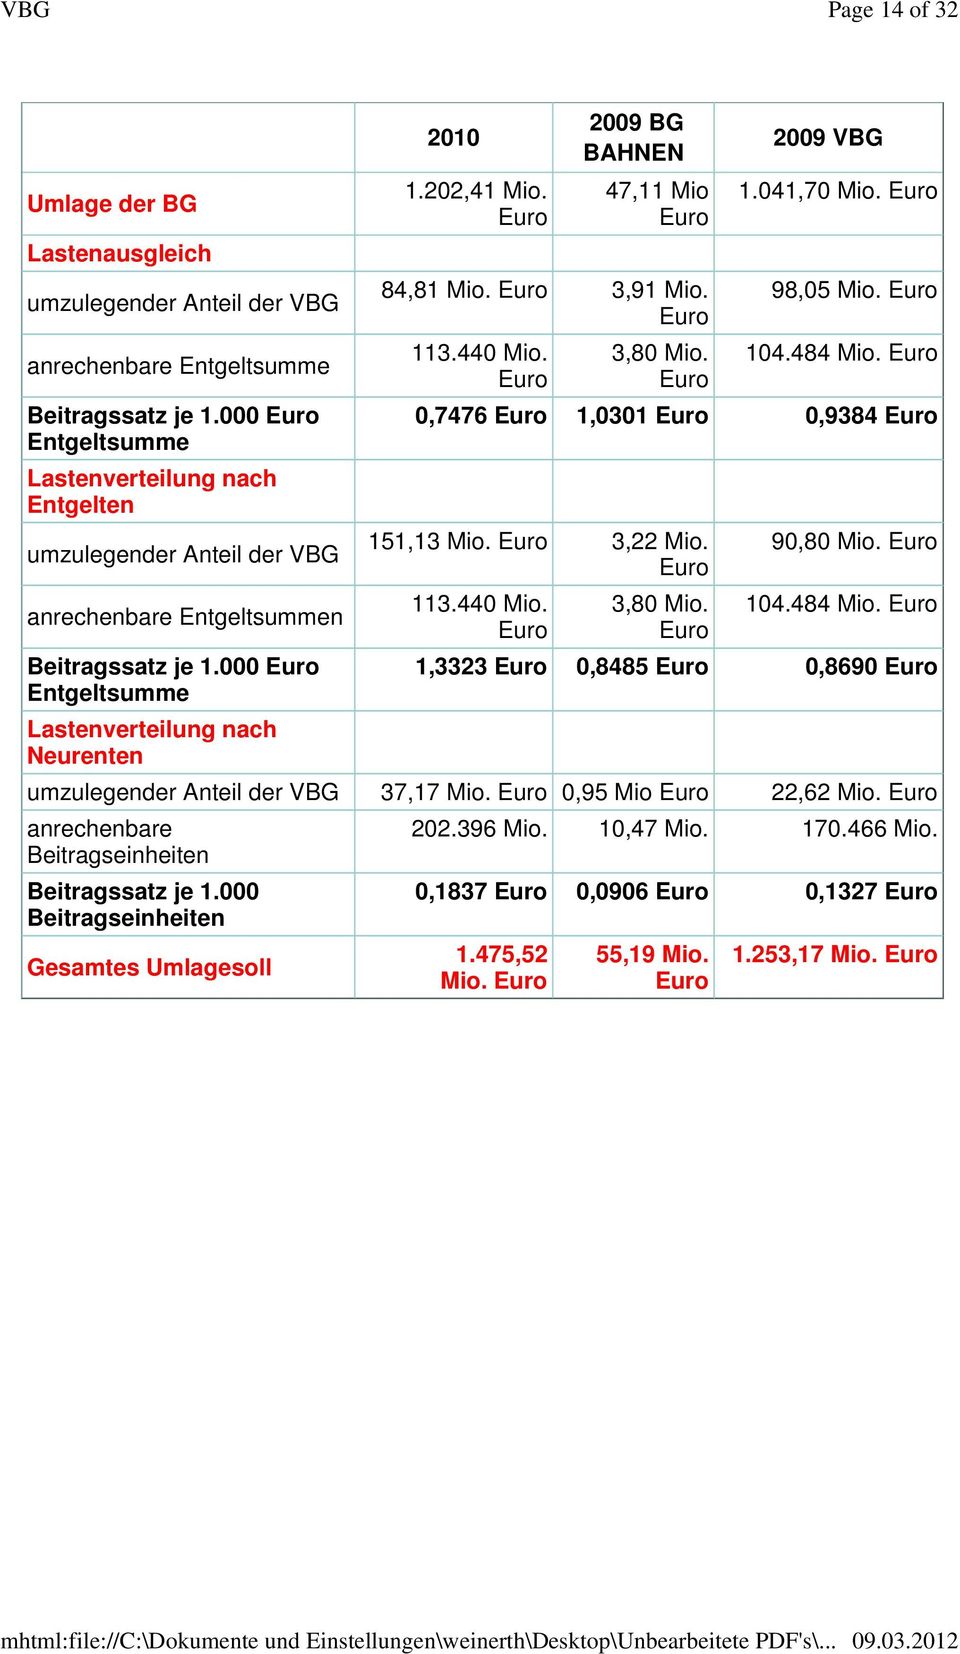 Euro 2009 BG BAHNEN 47,11 Mio Euro 84,81 Mio. Euro 3,91 Mio. Euro 113.440 Mio. Euro 3,80 Mio. Euro 2009 VBG 1.041,70 Mio. Euro 98,05 Mio. Euro 104.484 Mio.